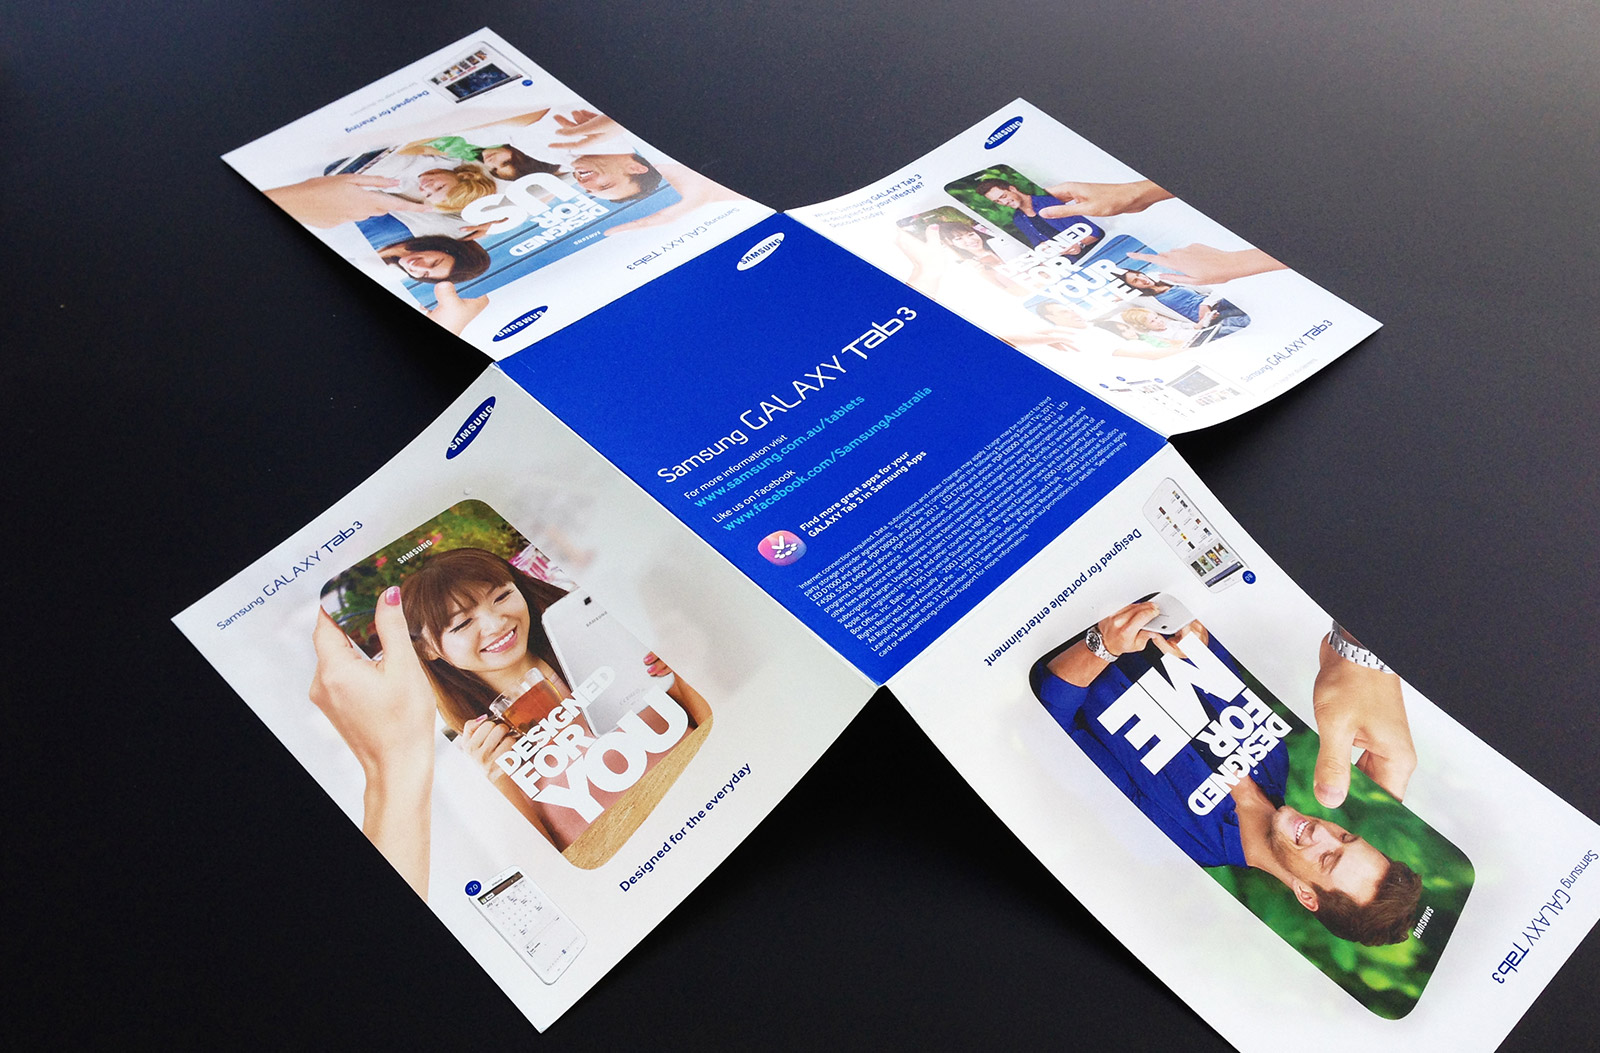 Samsung Galaxy Tab 3 key visual creative and flyer design by Allan Chan.